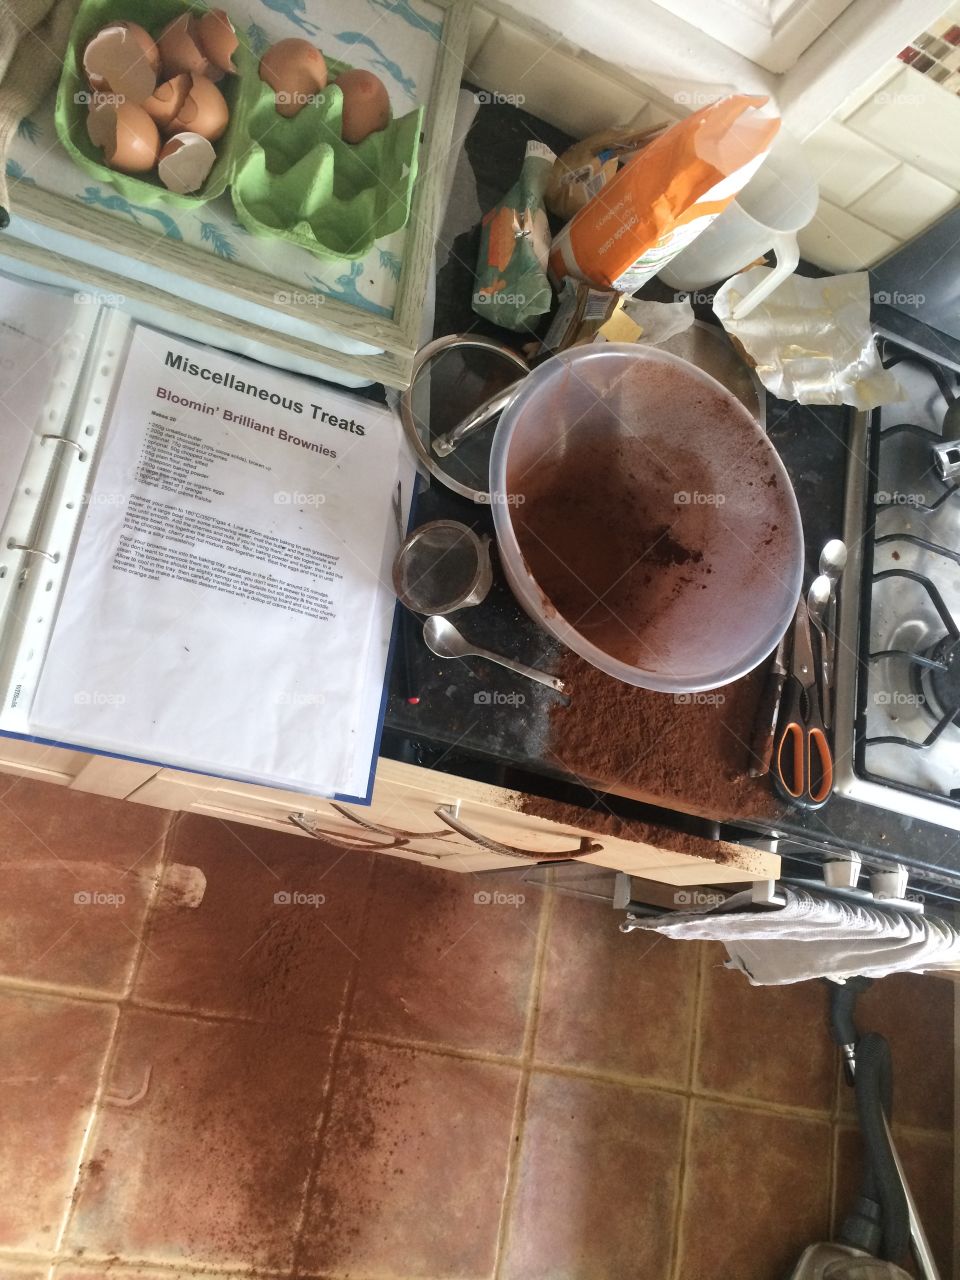 Kitchen baking disaster spillage mess